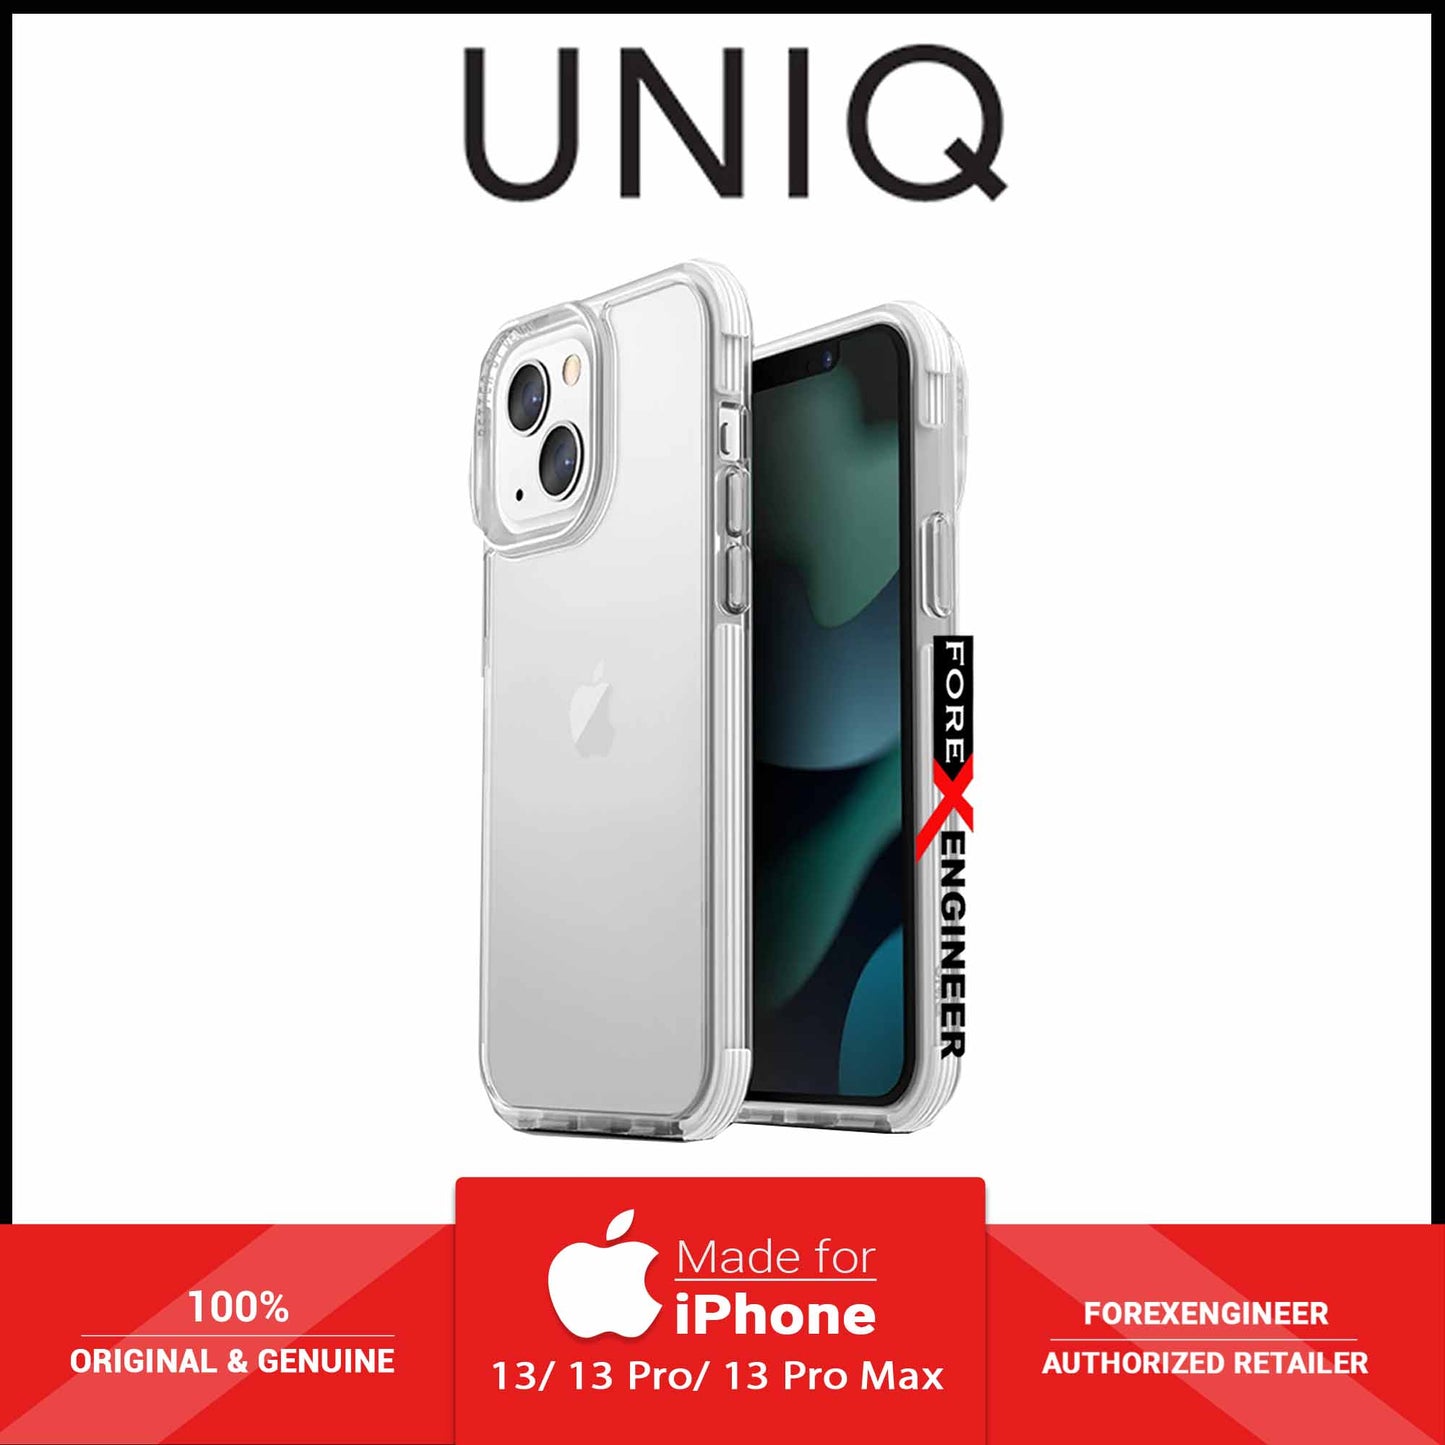 UNIQ Combat Case for iPhone 13 6.1" 5G - White (Barcode: 8886463677957 )